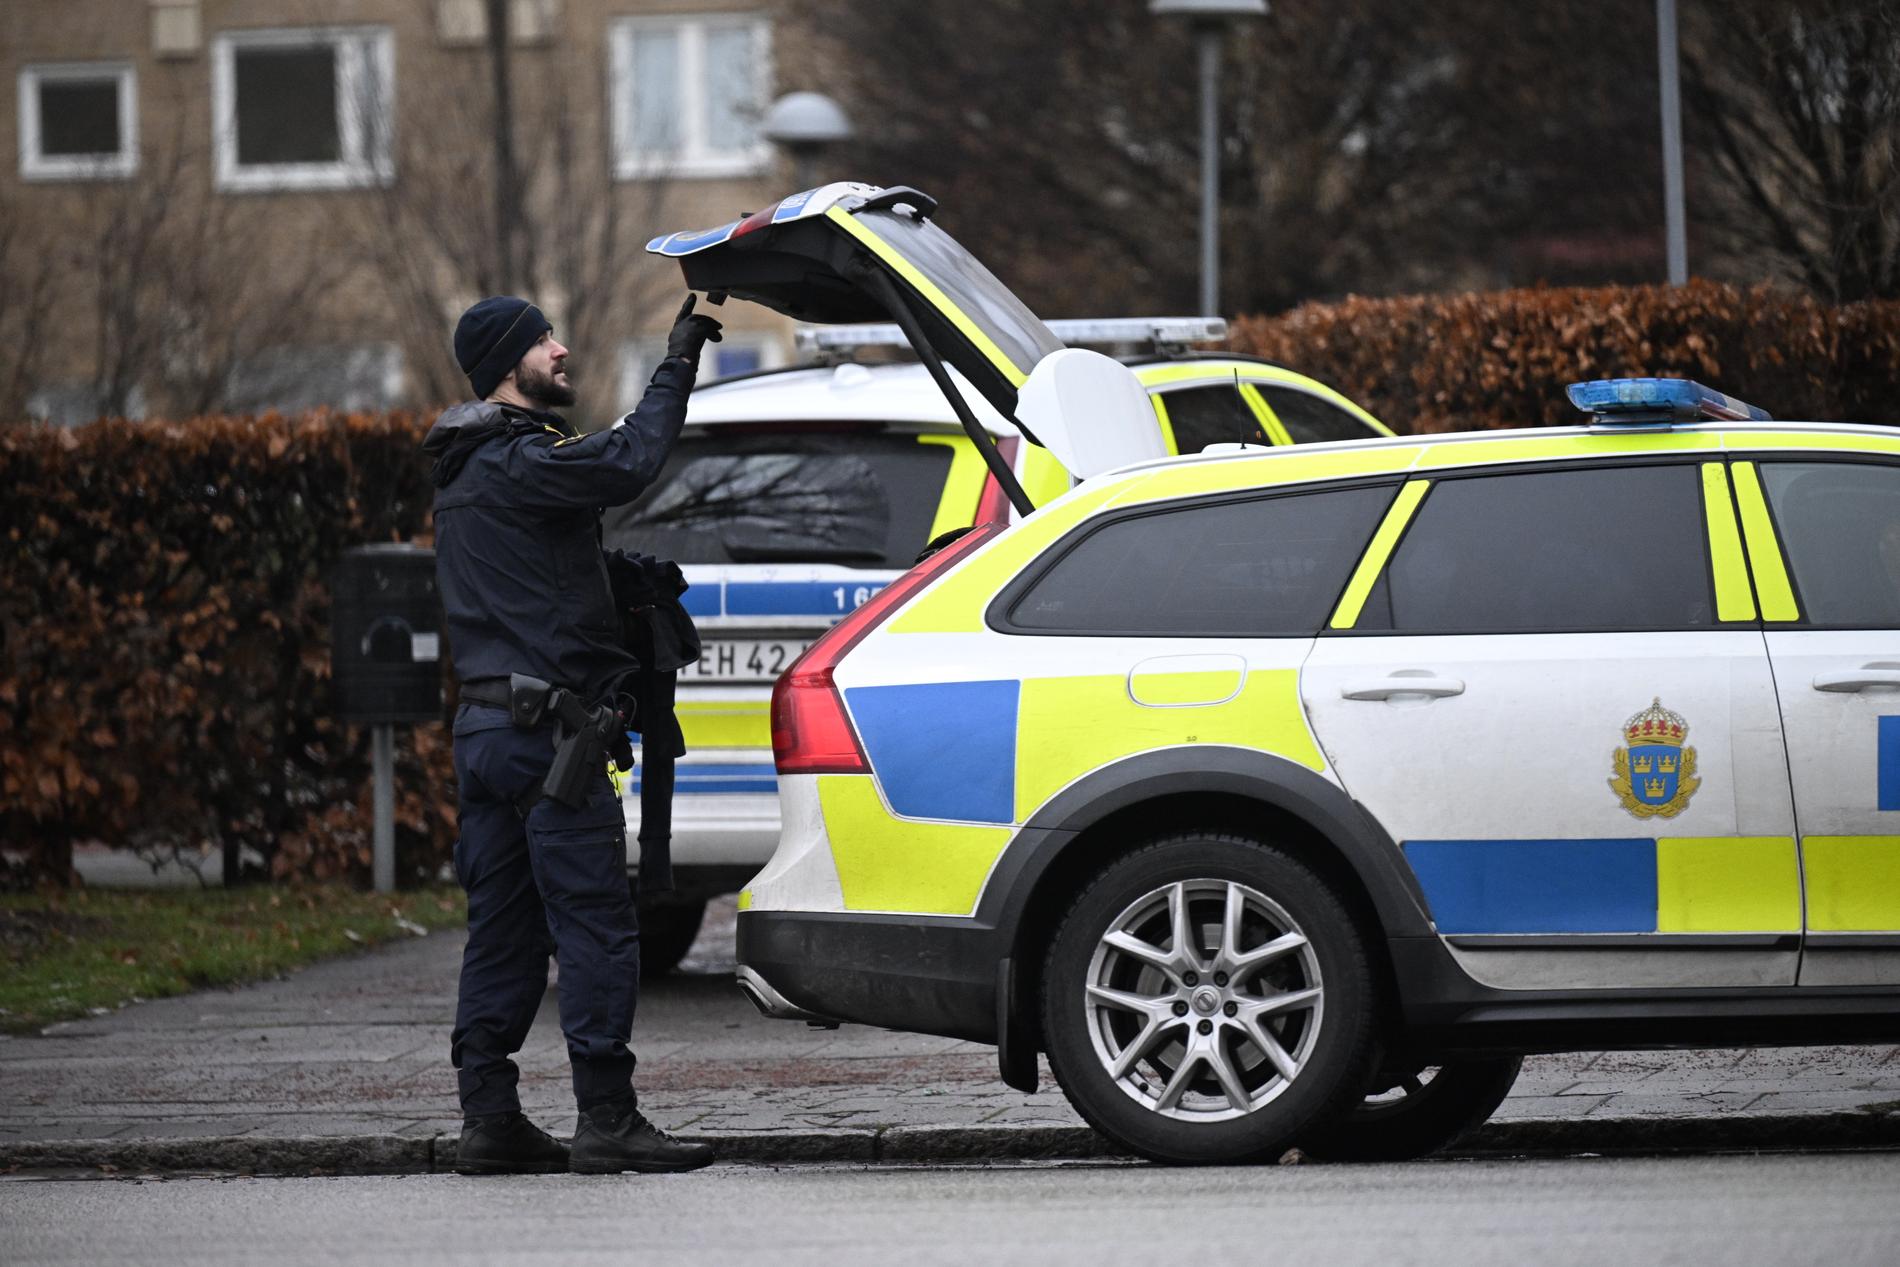 Polis på plats efter larm om skottlossning i Malmö på lördagsmorgonen.